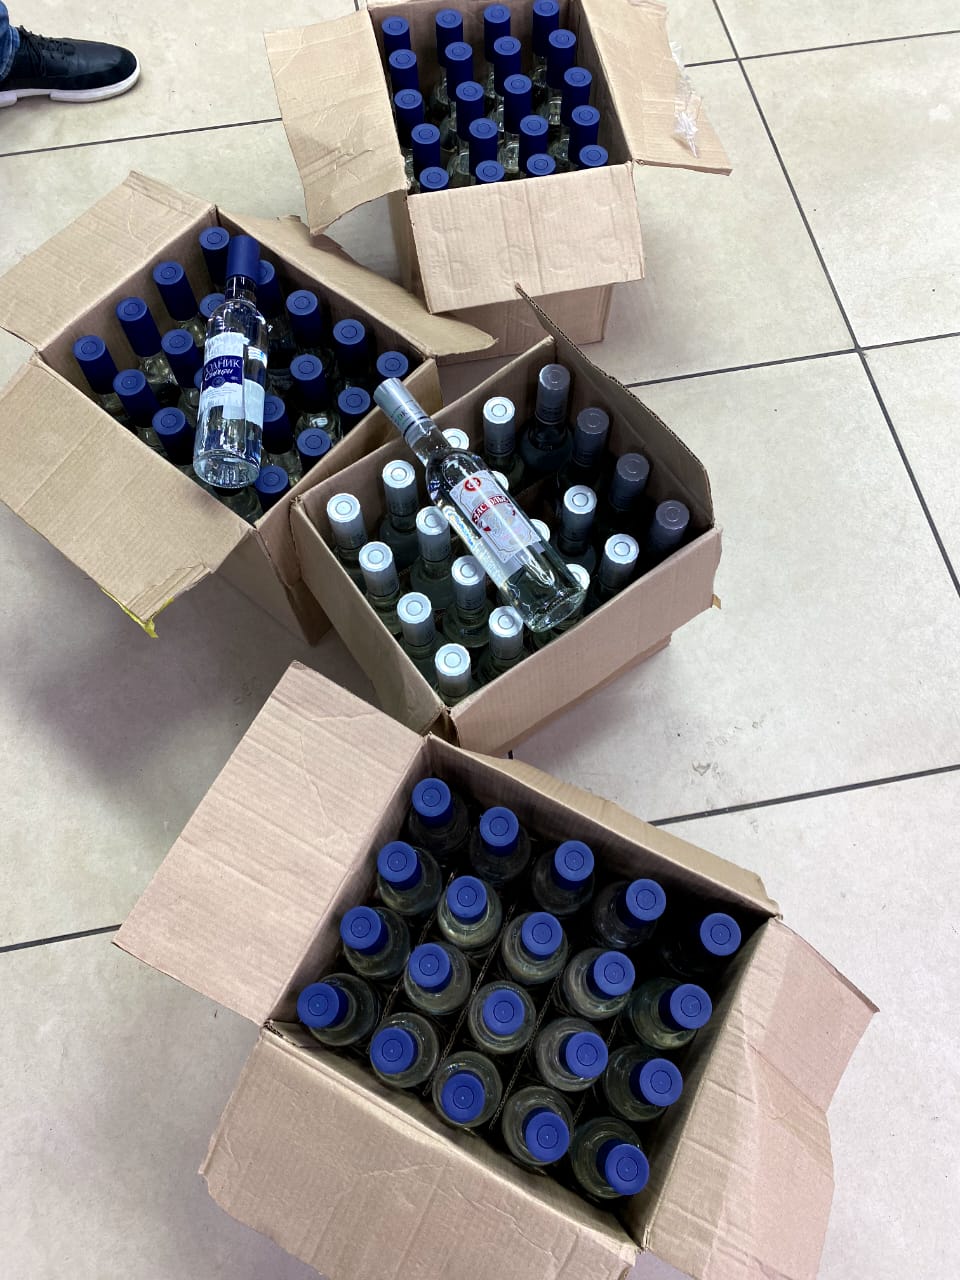 На подпольном заводе в Башкирии нашли 70 тысяч бутылок поддельной водки